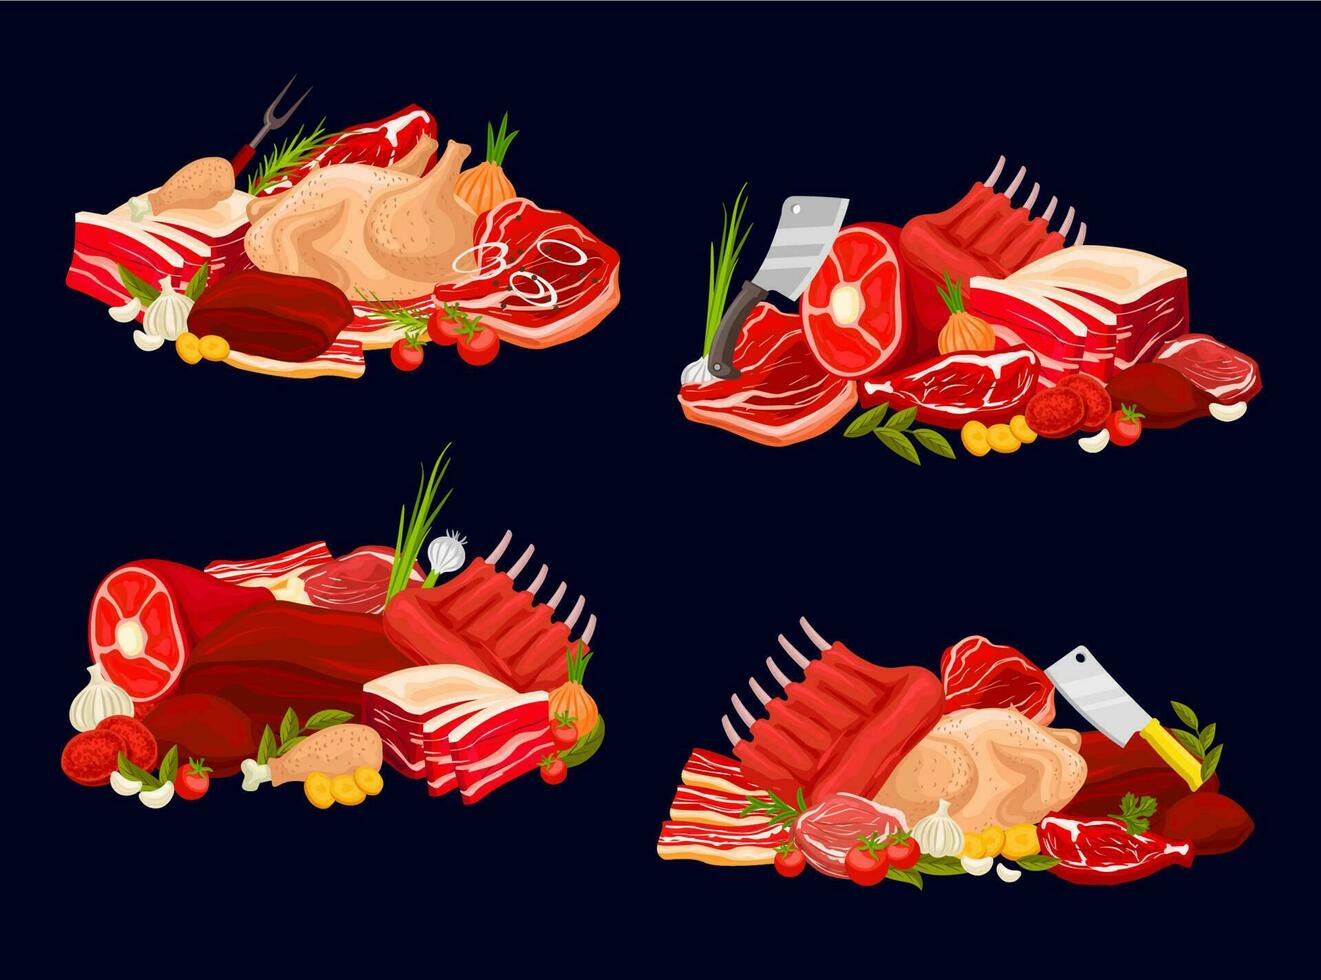 kött typer kalvkött och nötkött, fläsk, kyckling och fårkött vektor